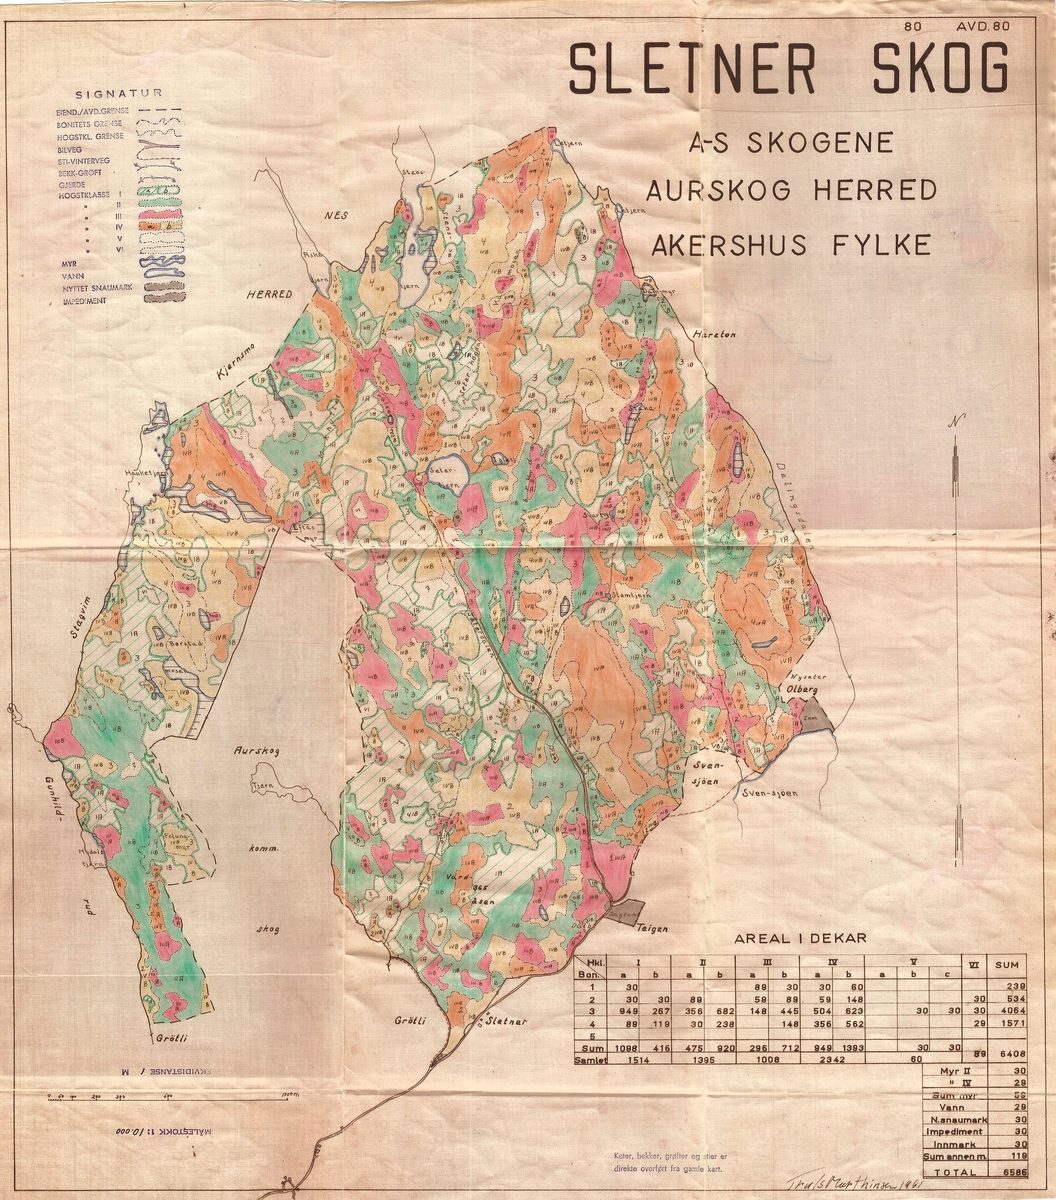 Kart, driftsplankart, bestandskart, over Sletner skog (AS Skogene) i Aurskog kommune, Akershus fylke.  
På kartet er arealet blant annet fordelt på ulike hogstklasser og bonitetstyper. 


Kartet er datert til 1961. 

Kartets målestokk er 1: 10 000